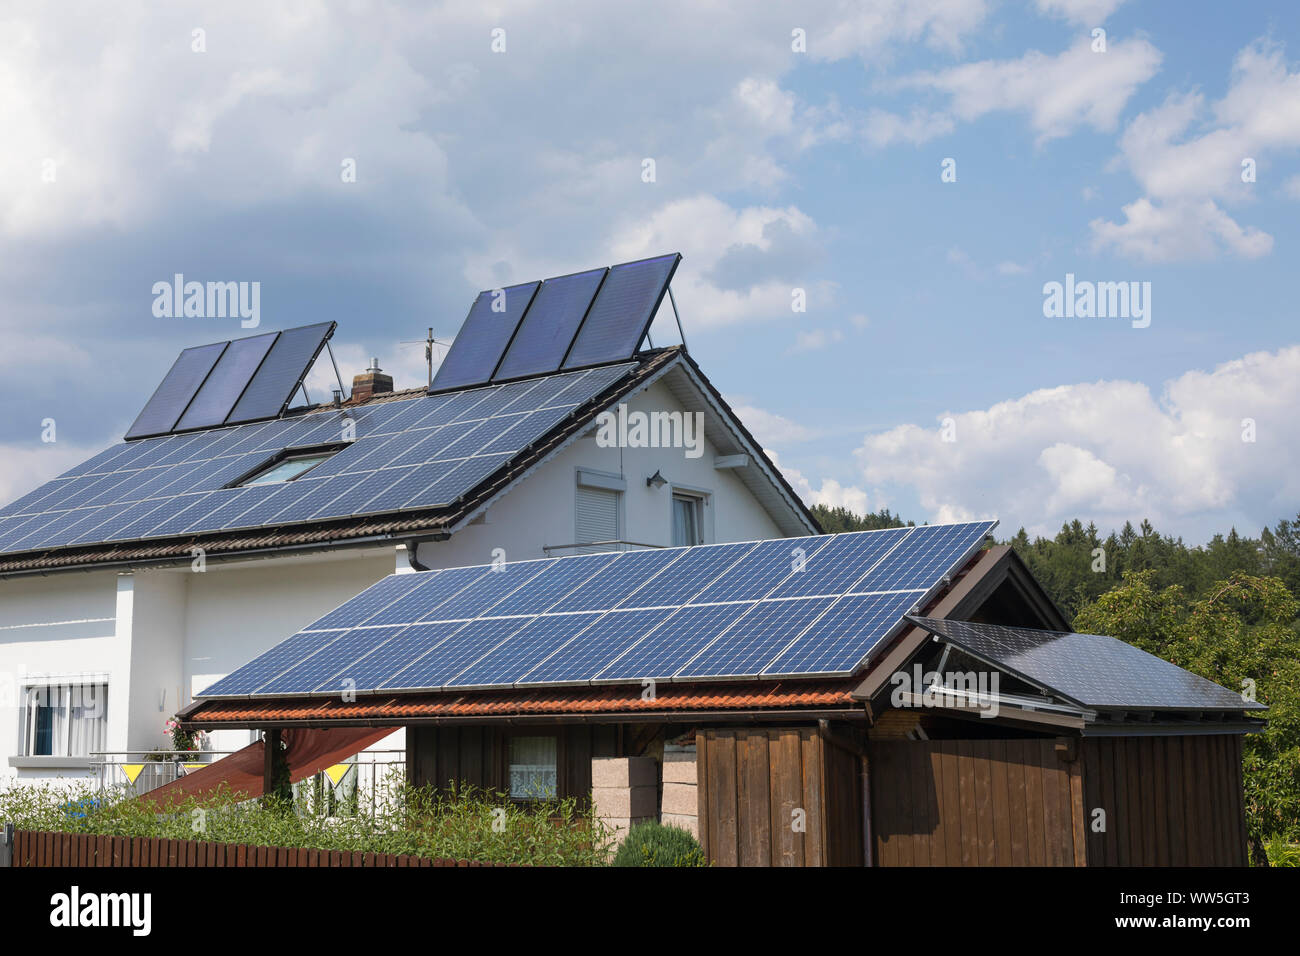 La energía solar fotovoltaica y los paneles de calefacción proporciona energía limpia a una casa en Baviera, Alemania Foto de stock